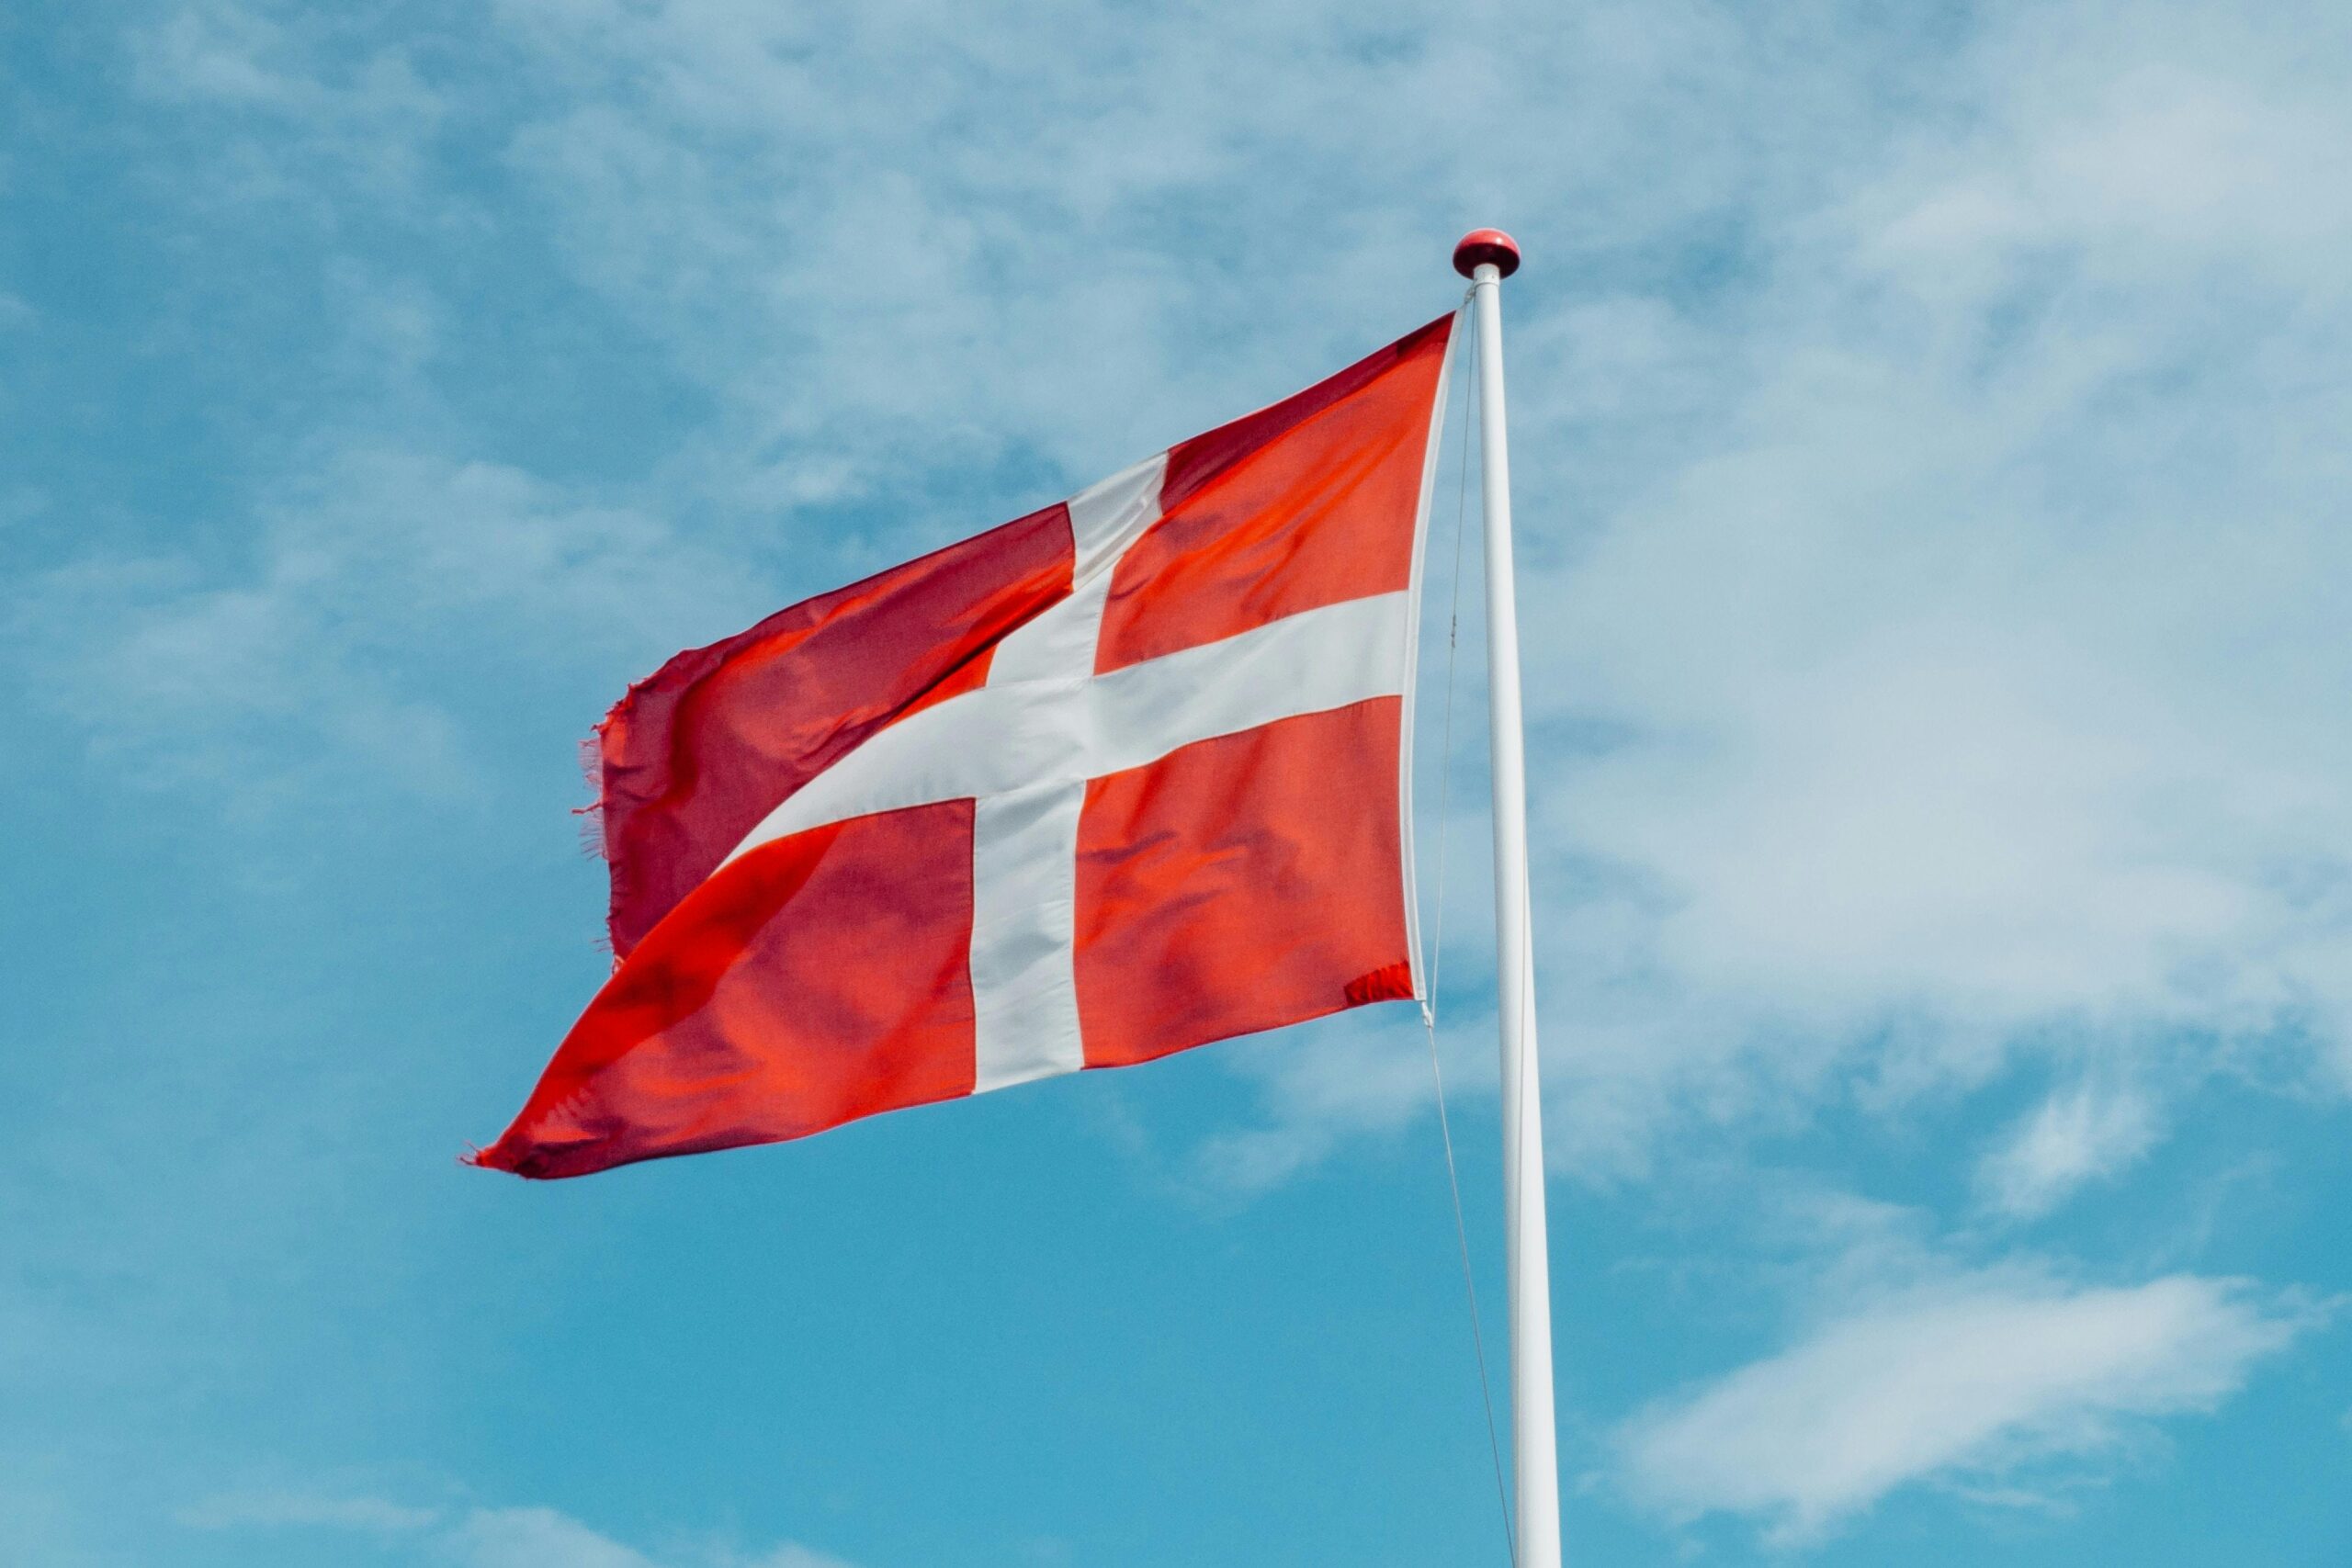 Eine rote Flagge mit weißem Kreuz (Dänemark-Flagge) weht vor blauem Himmel von rechts nach links.